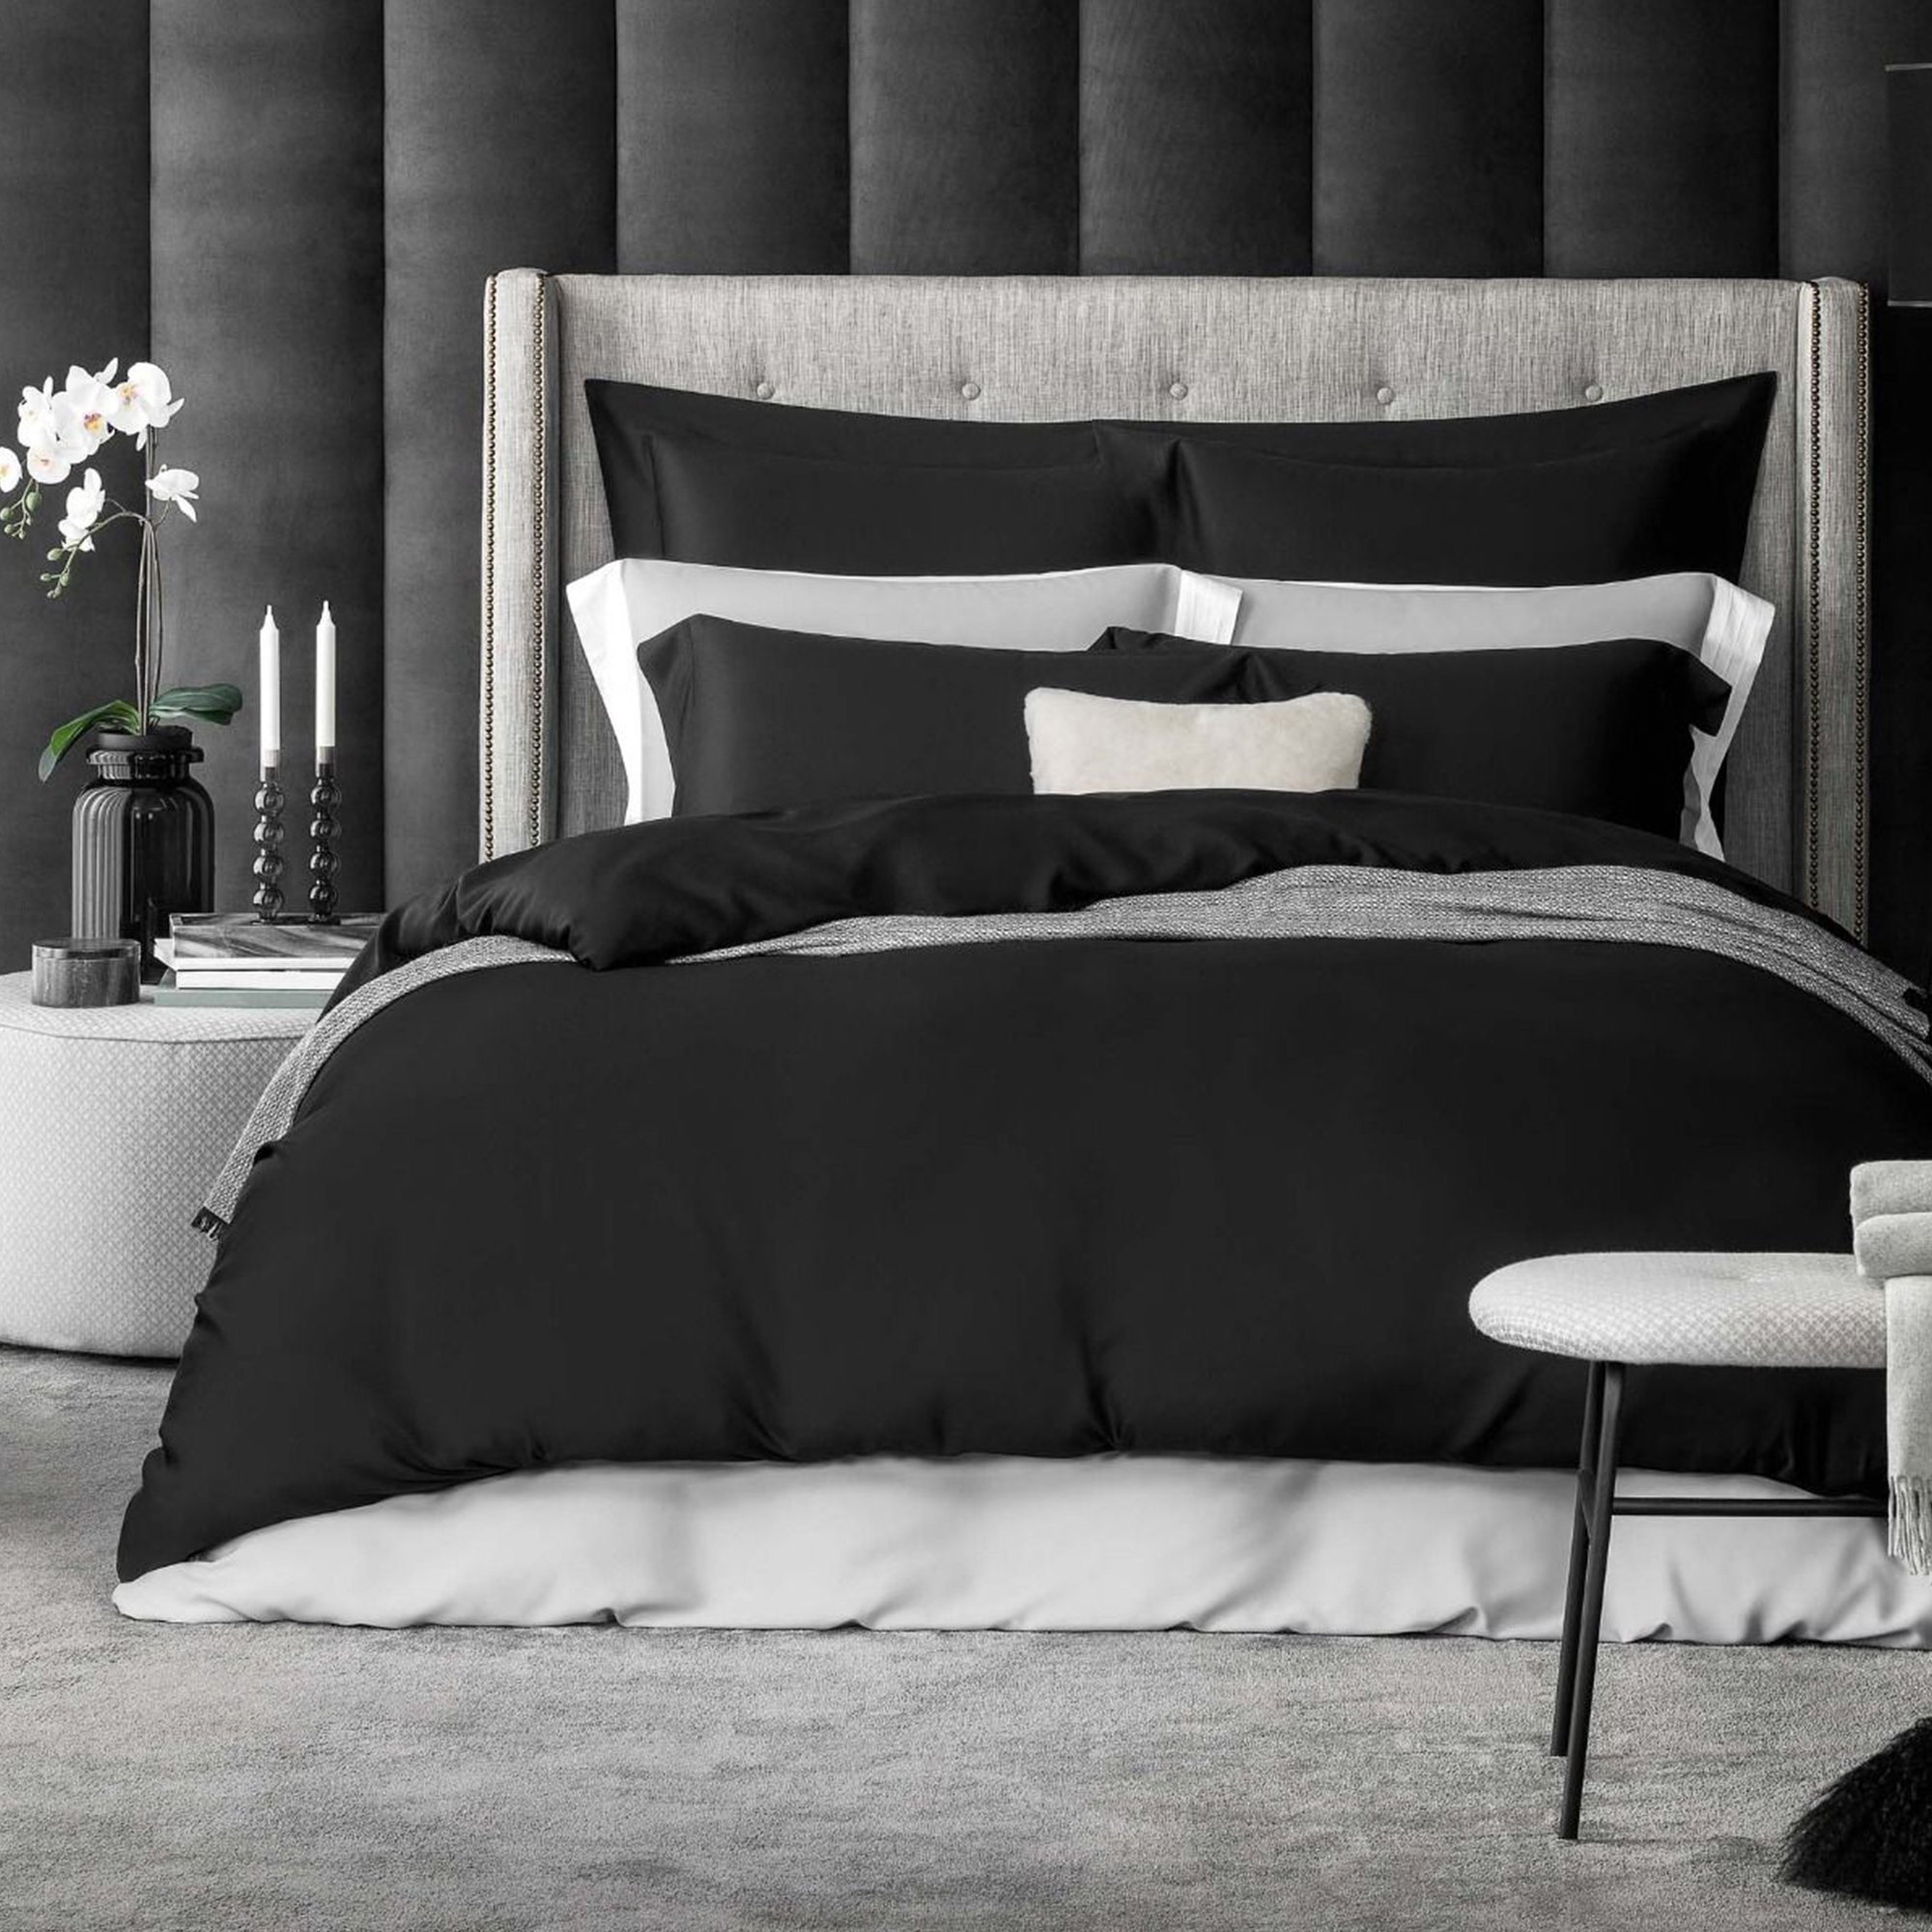 Комплект постельного белья Togas Сенса черный Полуторный комплект постельного белья togas сенса серый полуторный